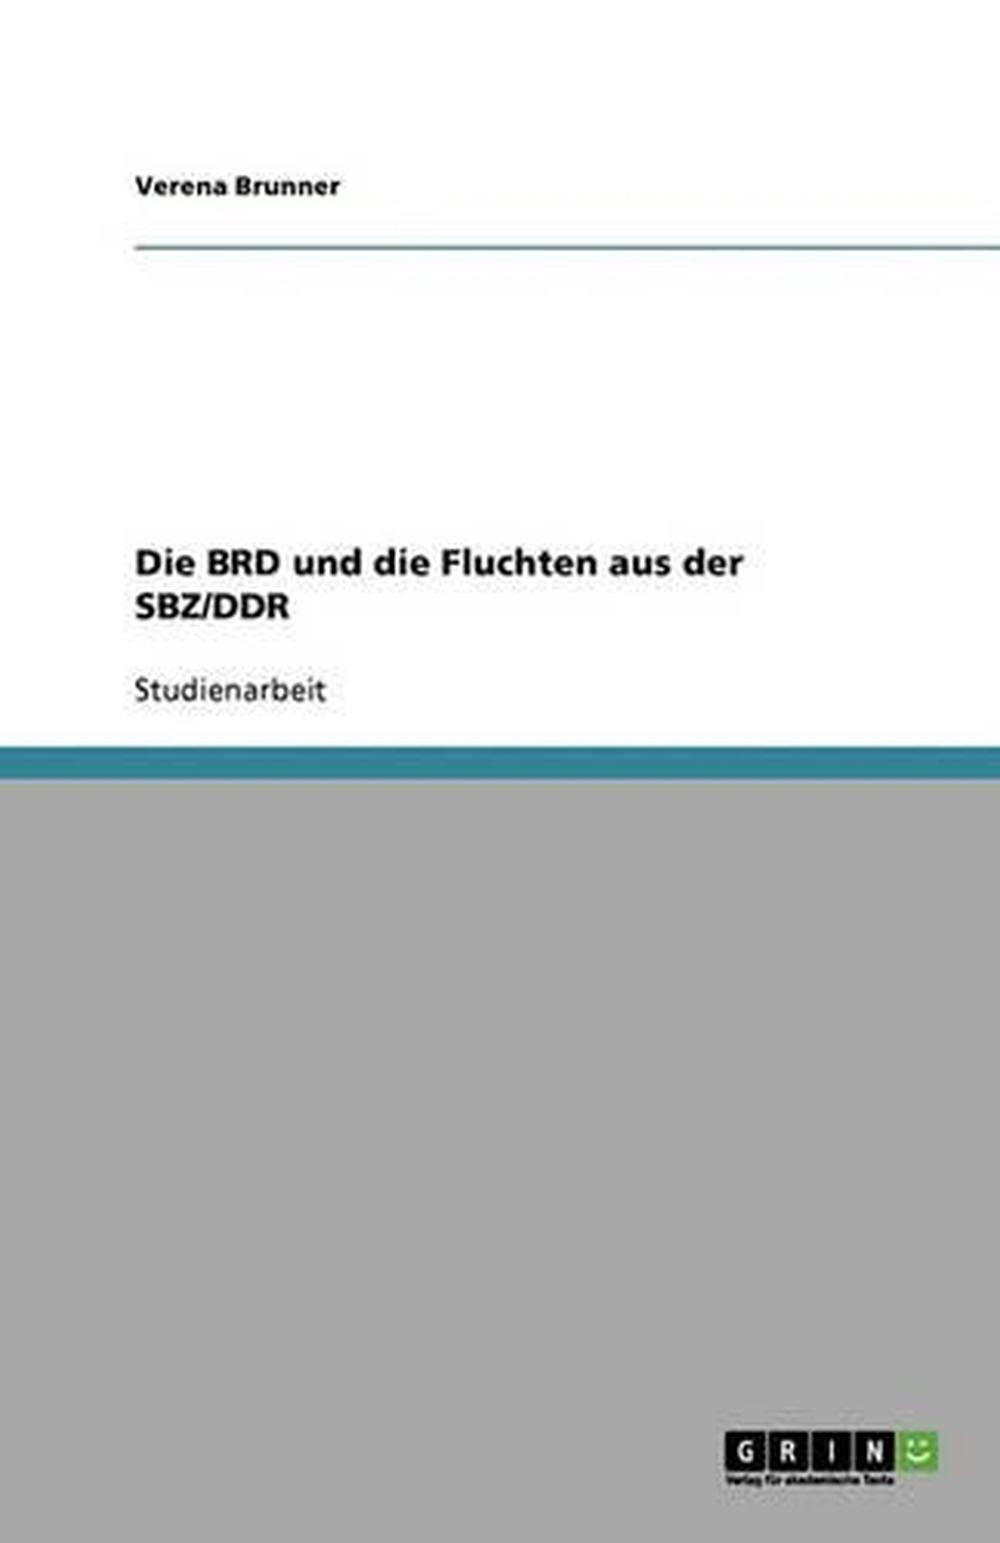 Die Brd Und Die Fluchten Aus Der Sbz/Ddr by Verena Brunner (German) Paperback Bo - 第 1/1 張圖片